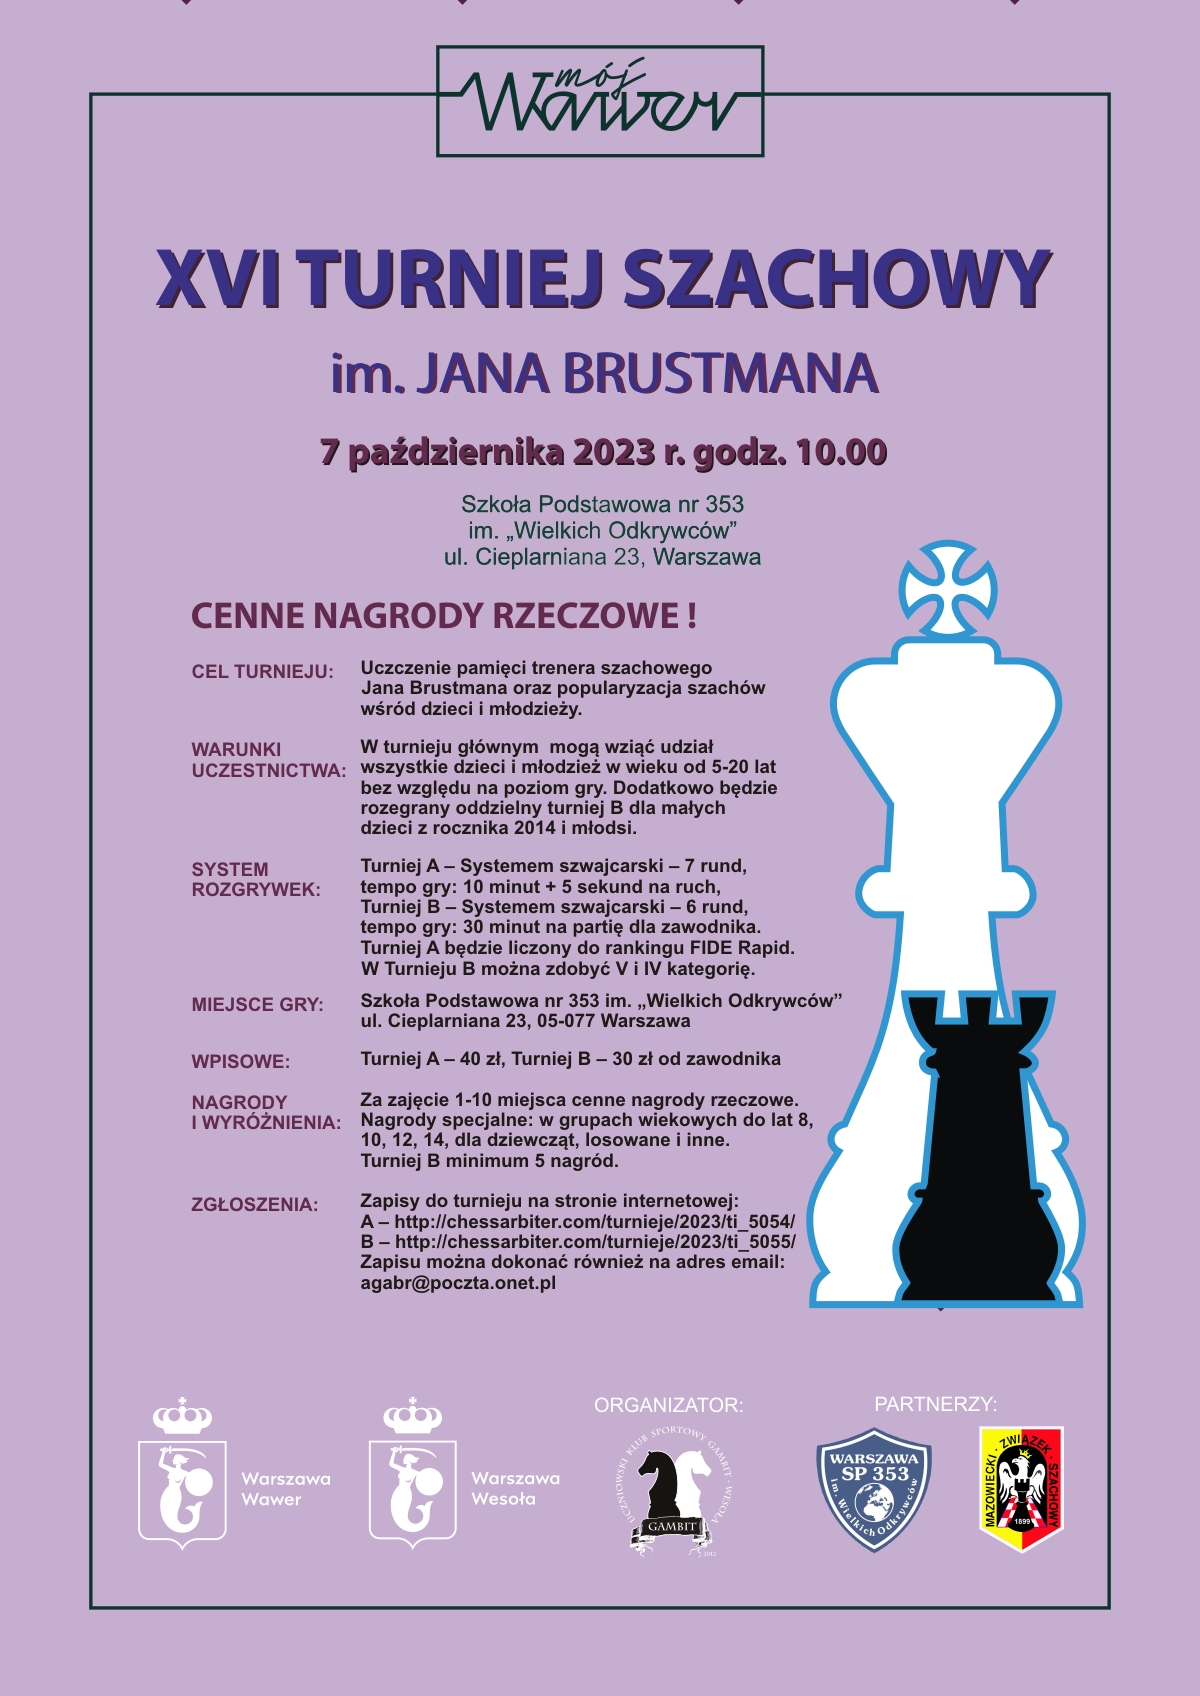 fioletowy plakat z dwoma figurami szachowymi, białym królem i czarną wieżą